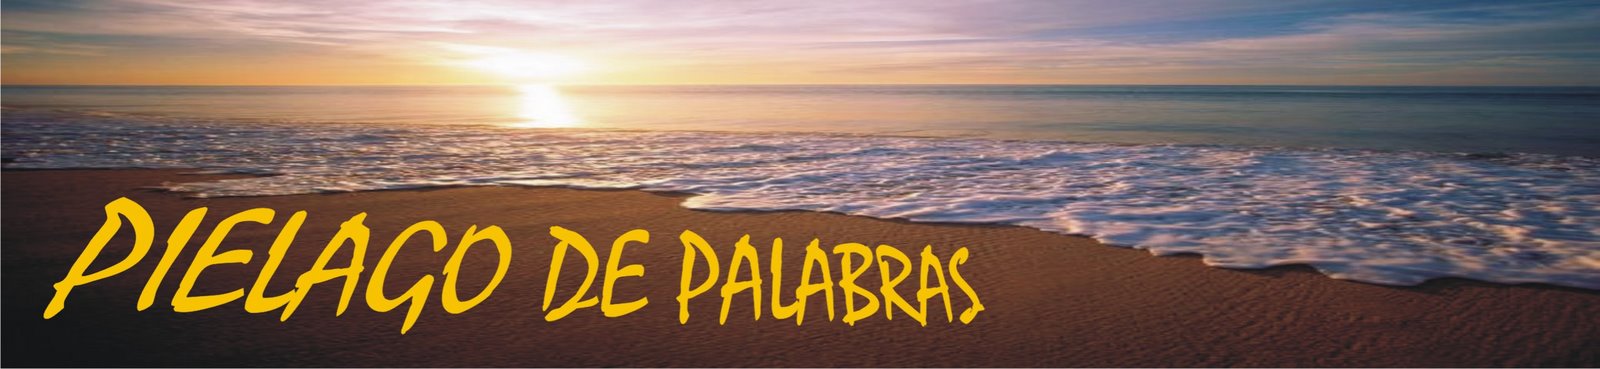 PIELAGO DE PALABRAS